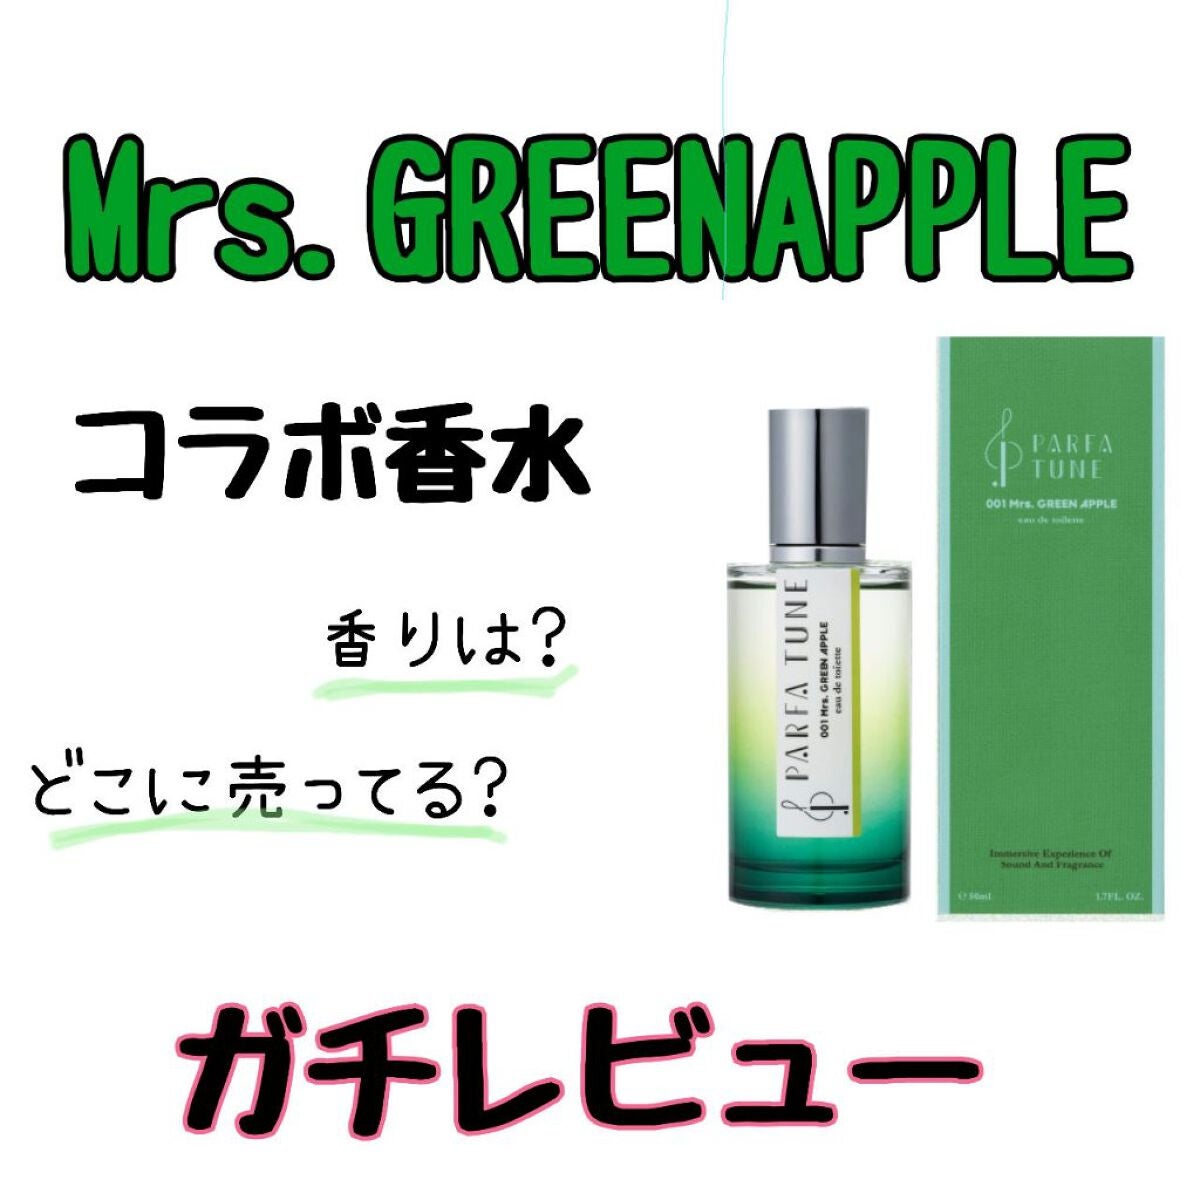 ×2 パルファチューン 001ミセスグリーンアップル 50ml 香水